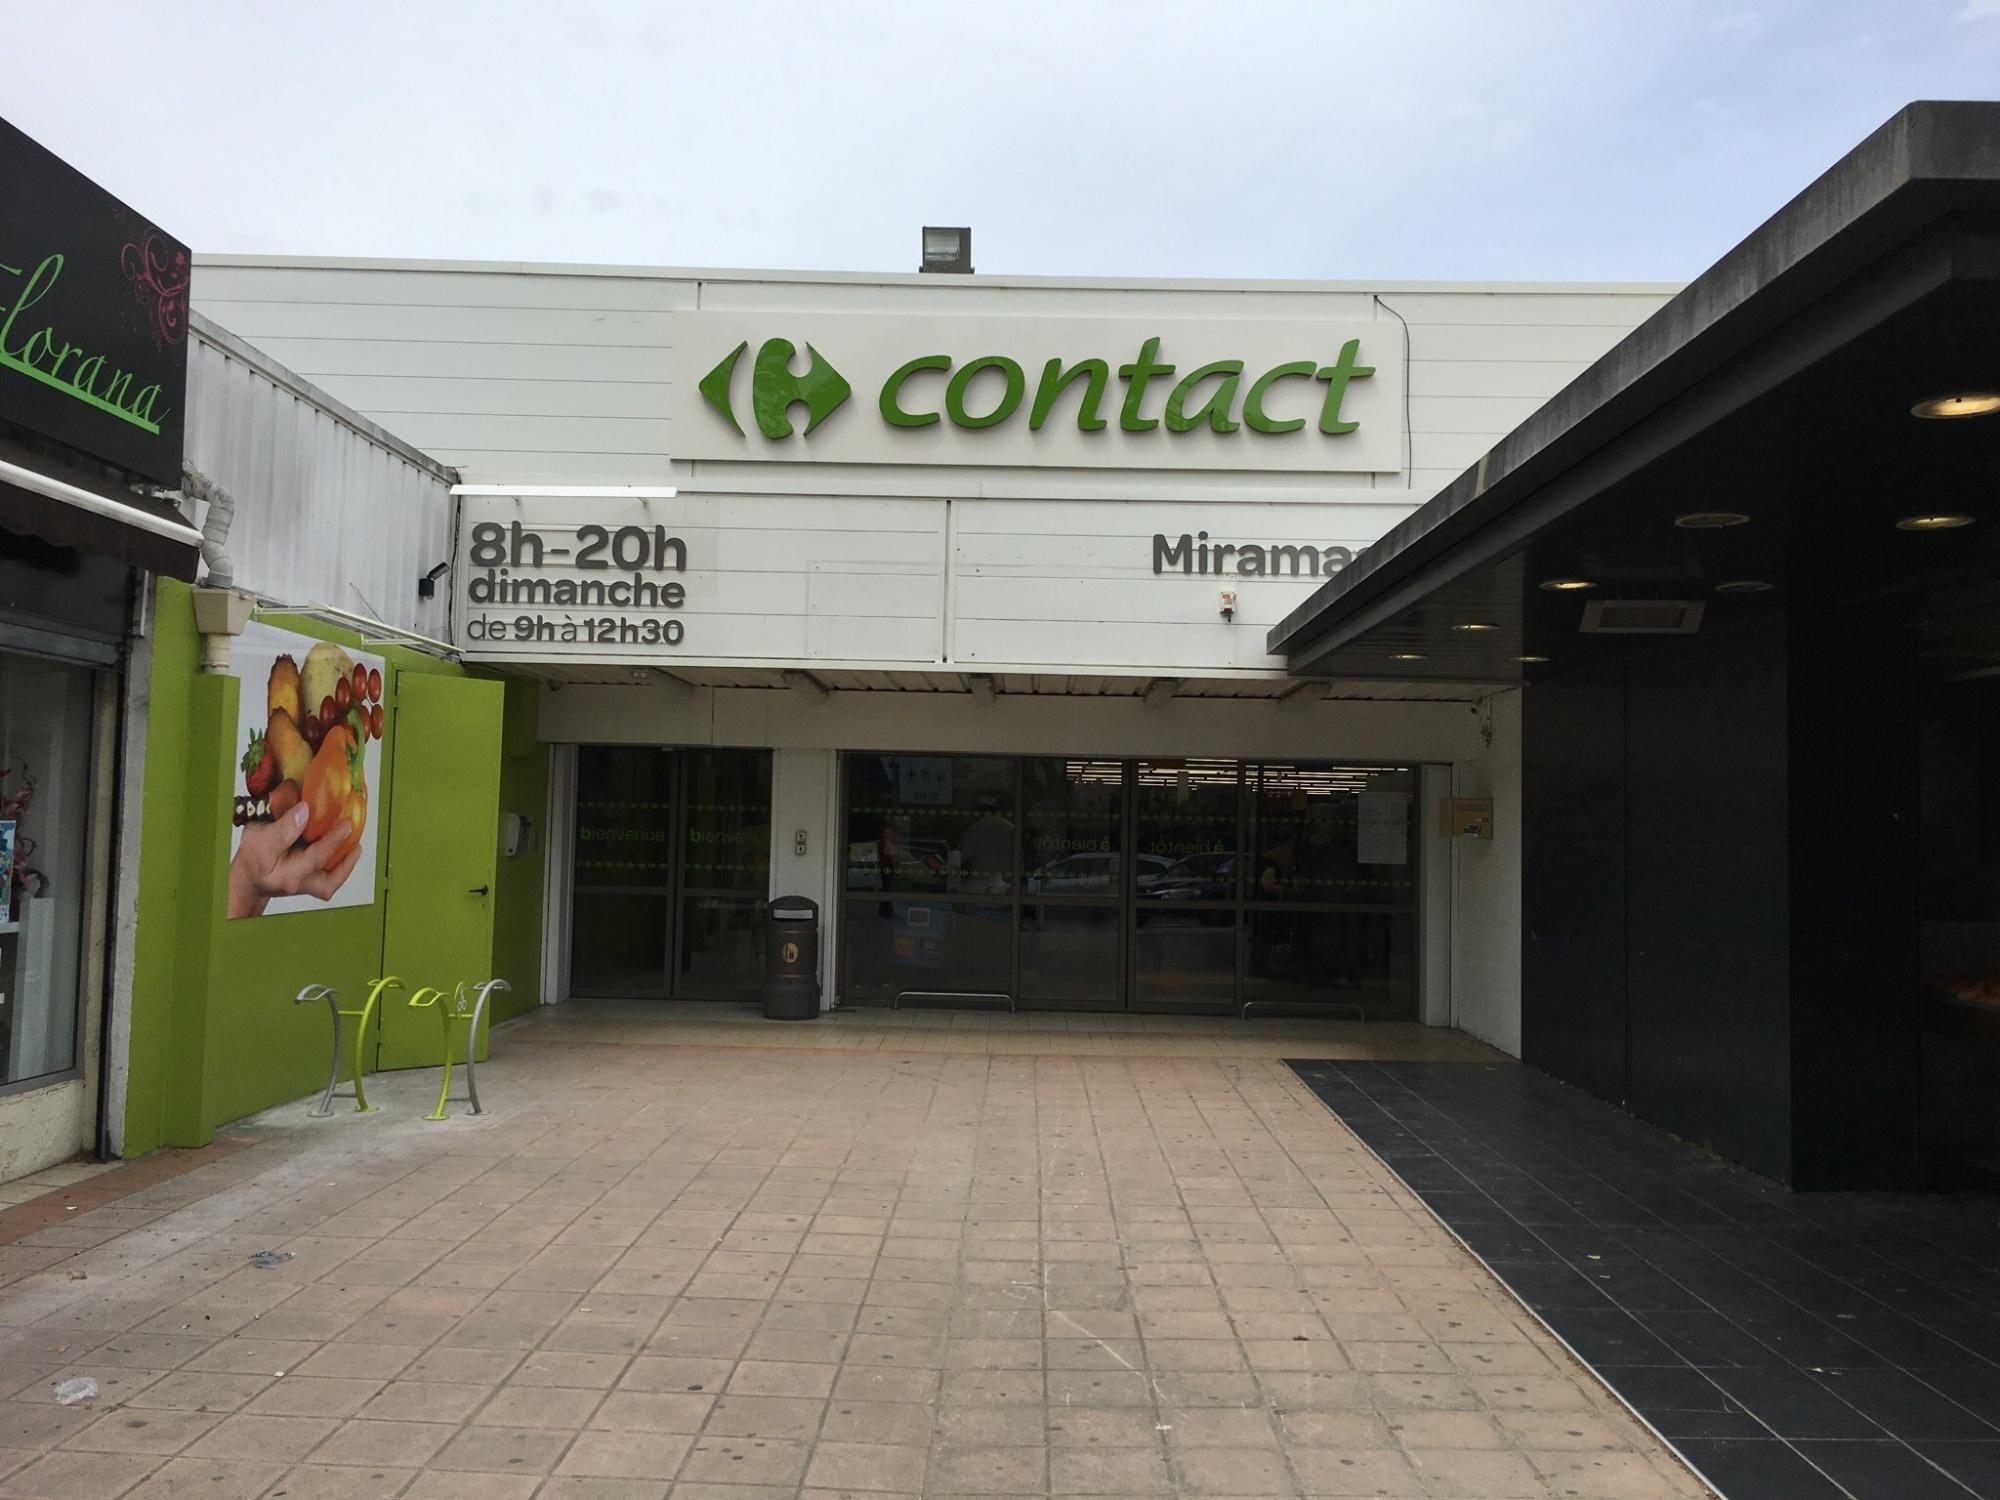 Carrefour Contact Miramas